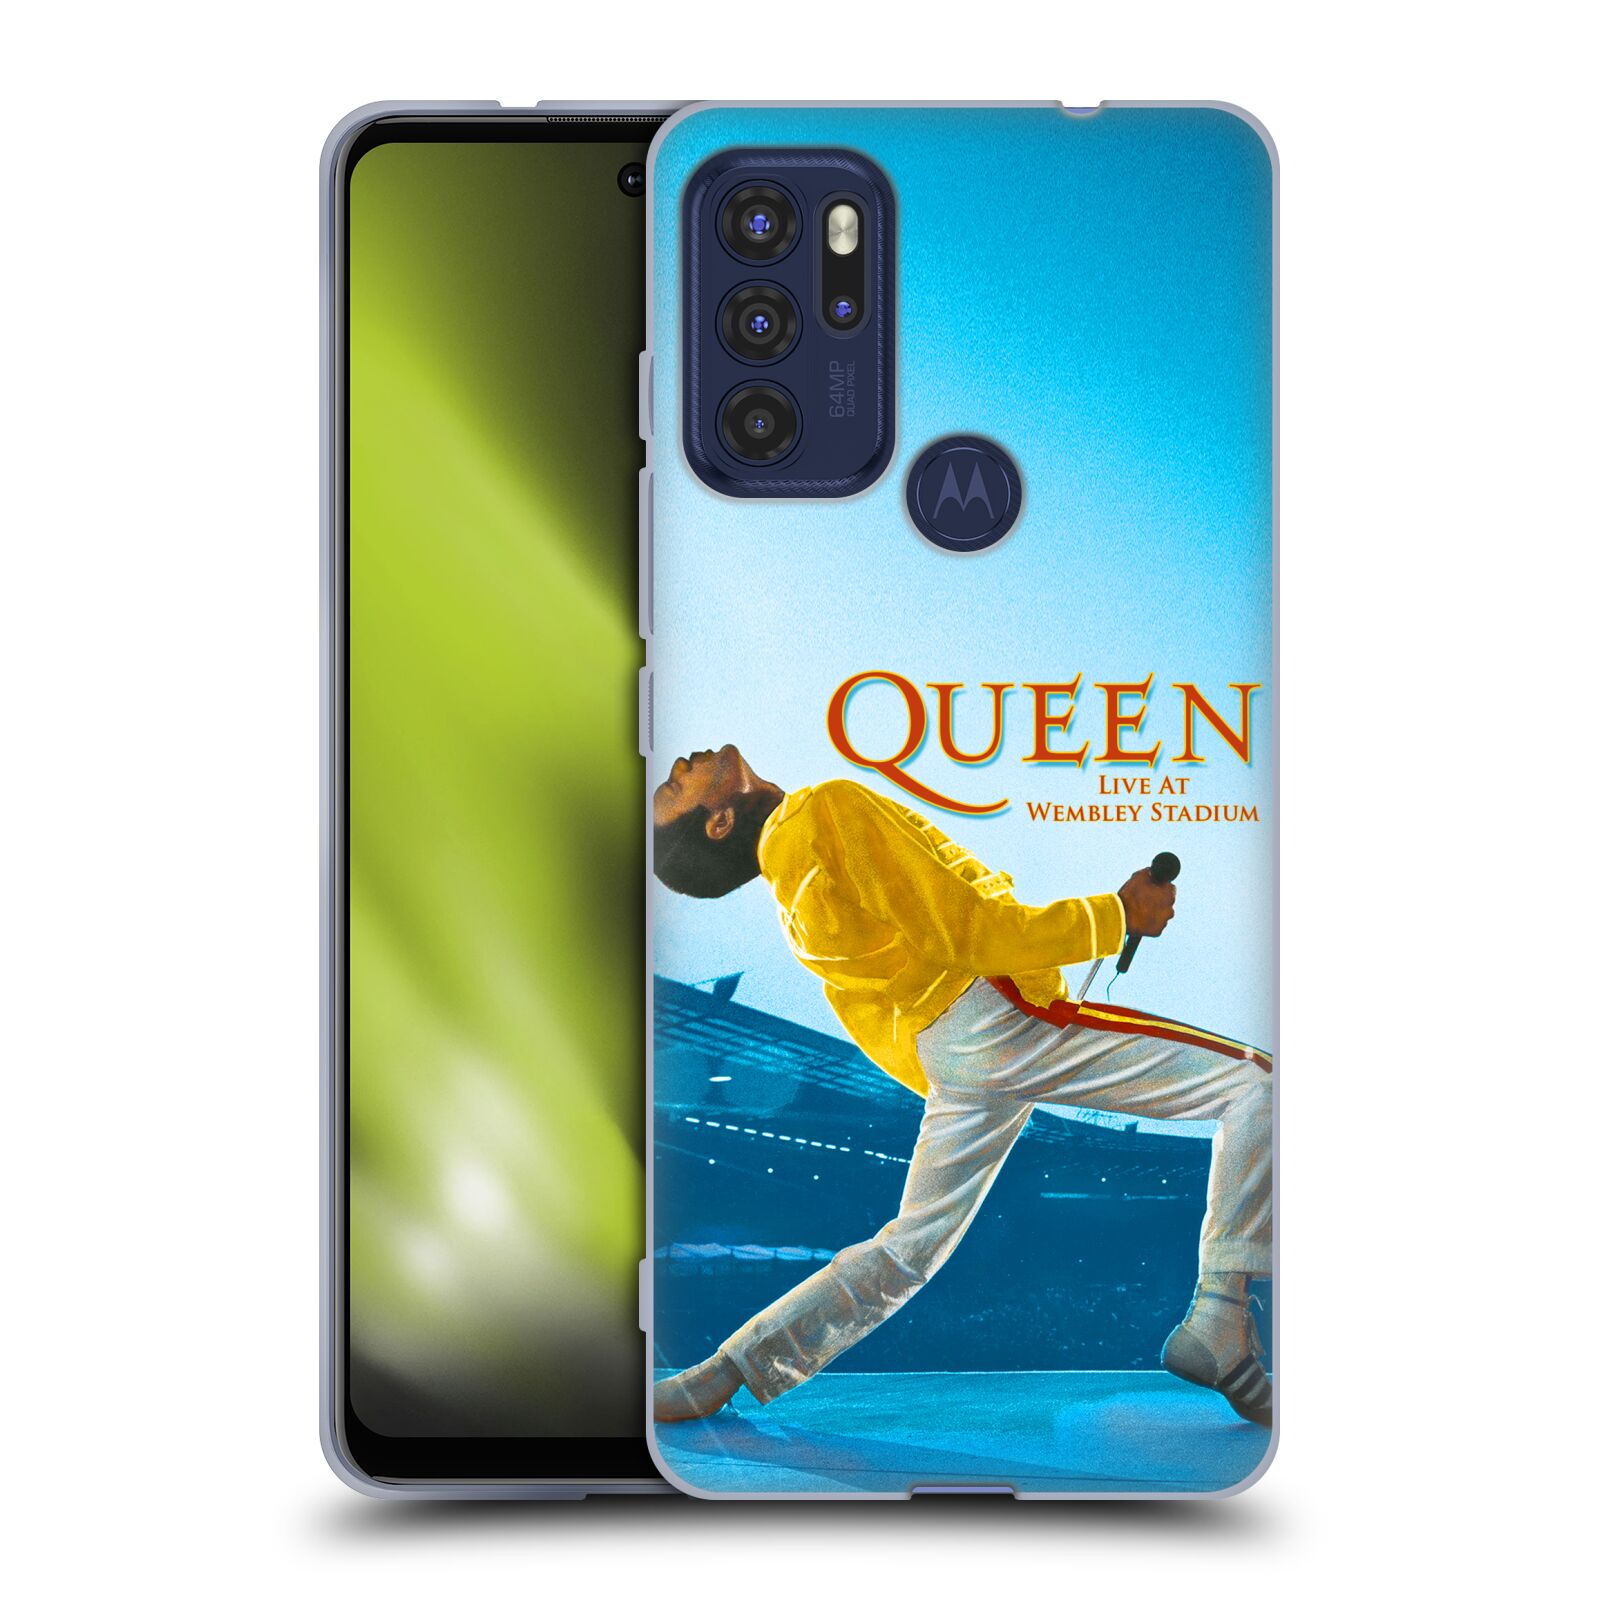 Silikonové pouzdro na mobil Motorola Moto G60s - Head Case - Queen - Freddie Mercury